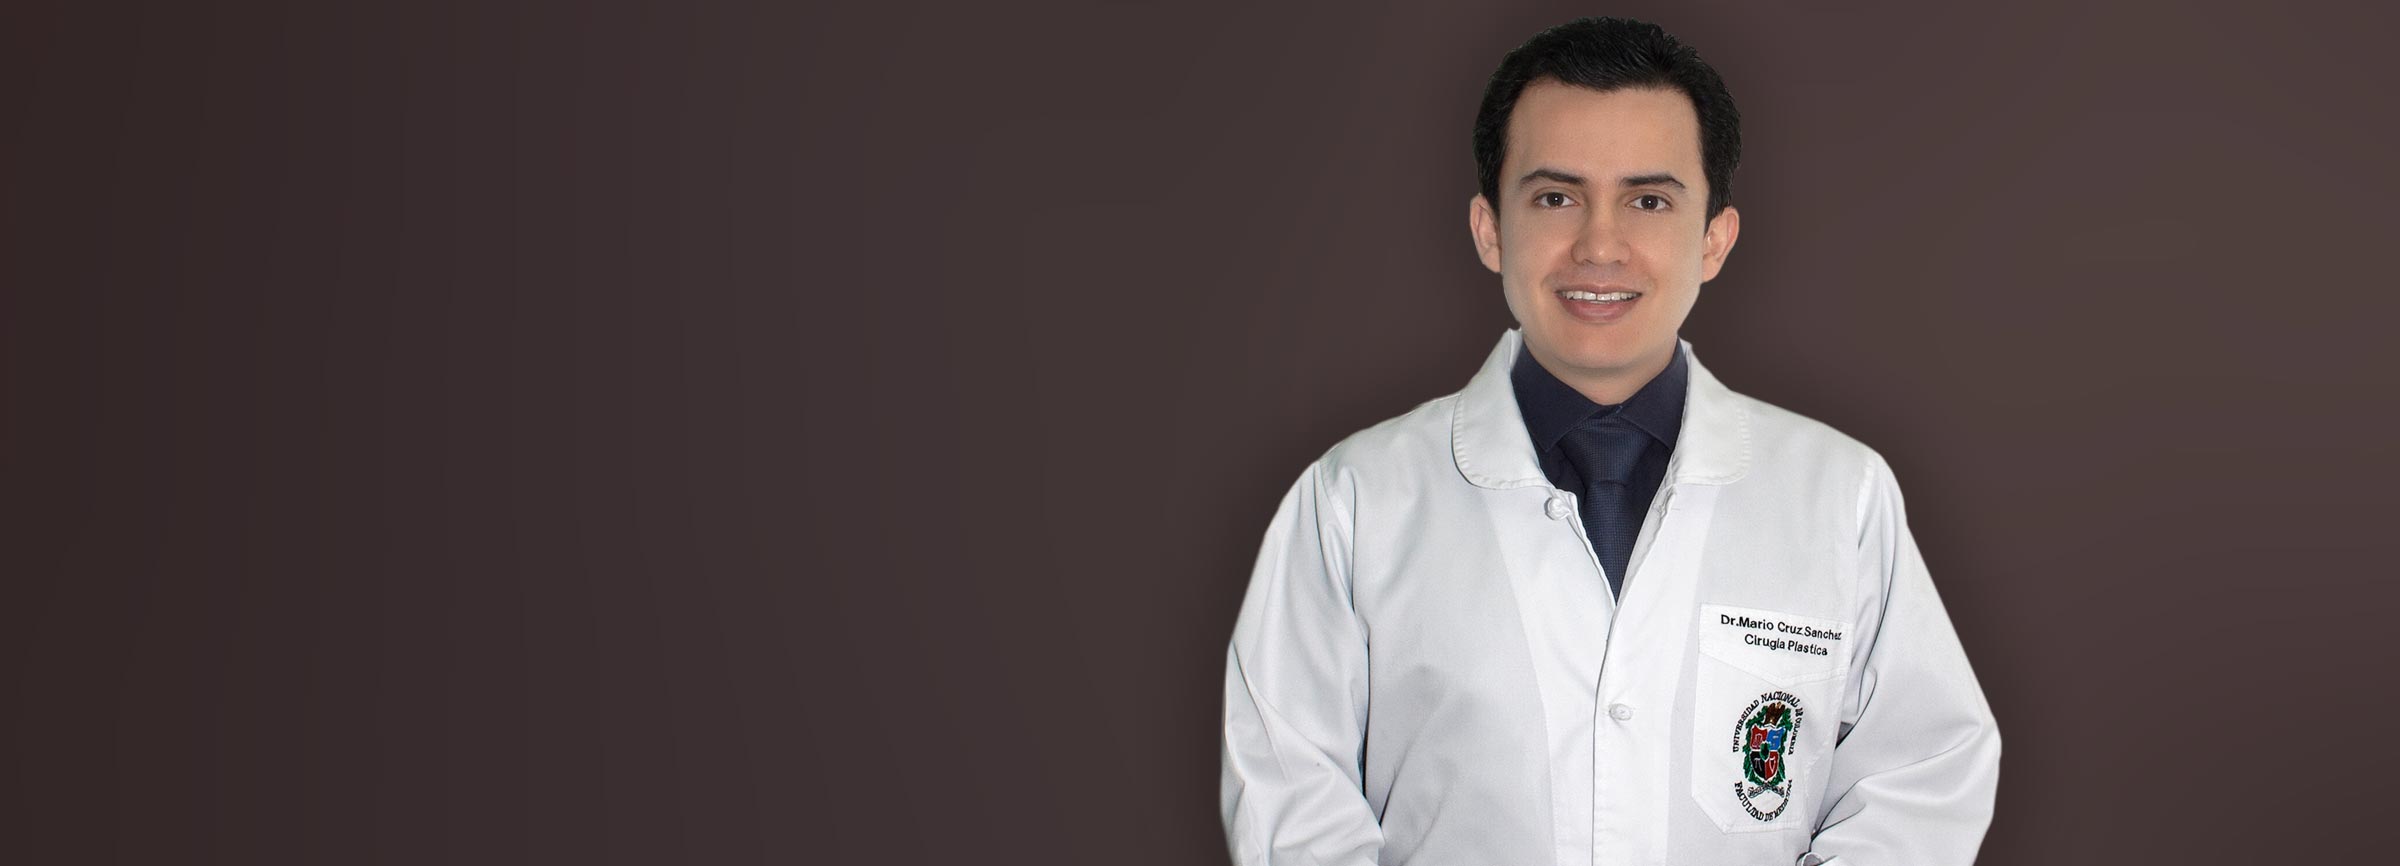 Dr. Mario Cruz